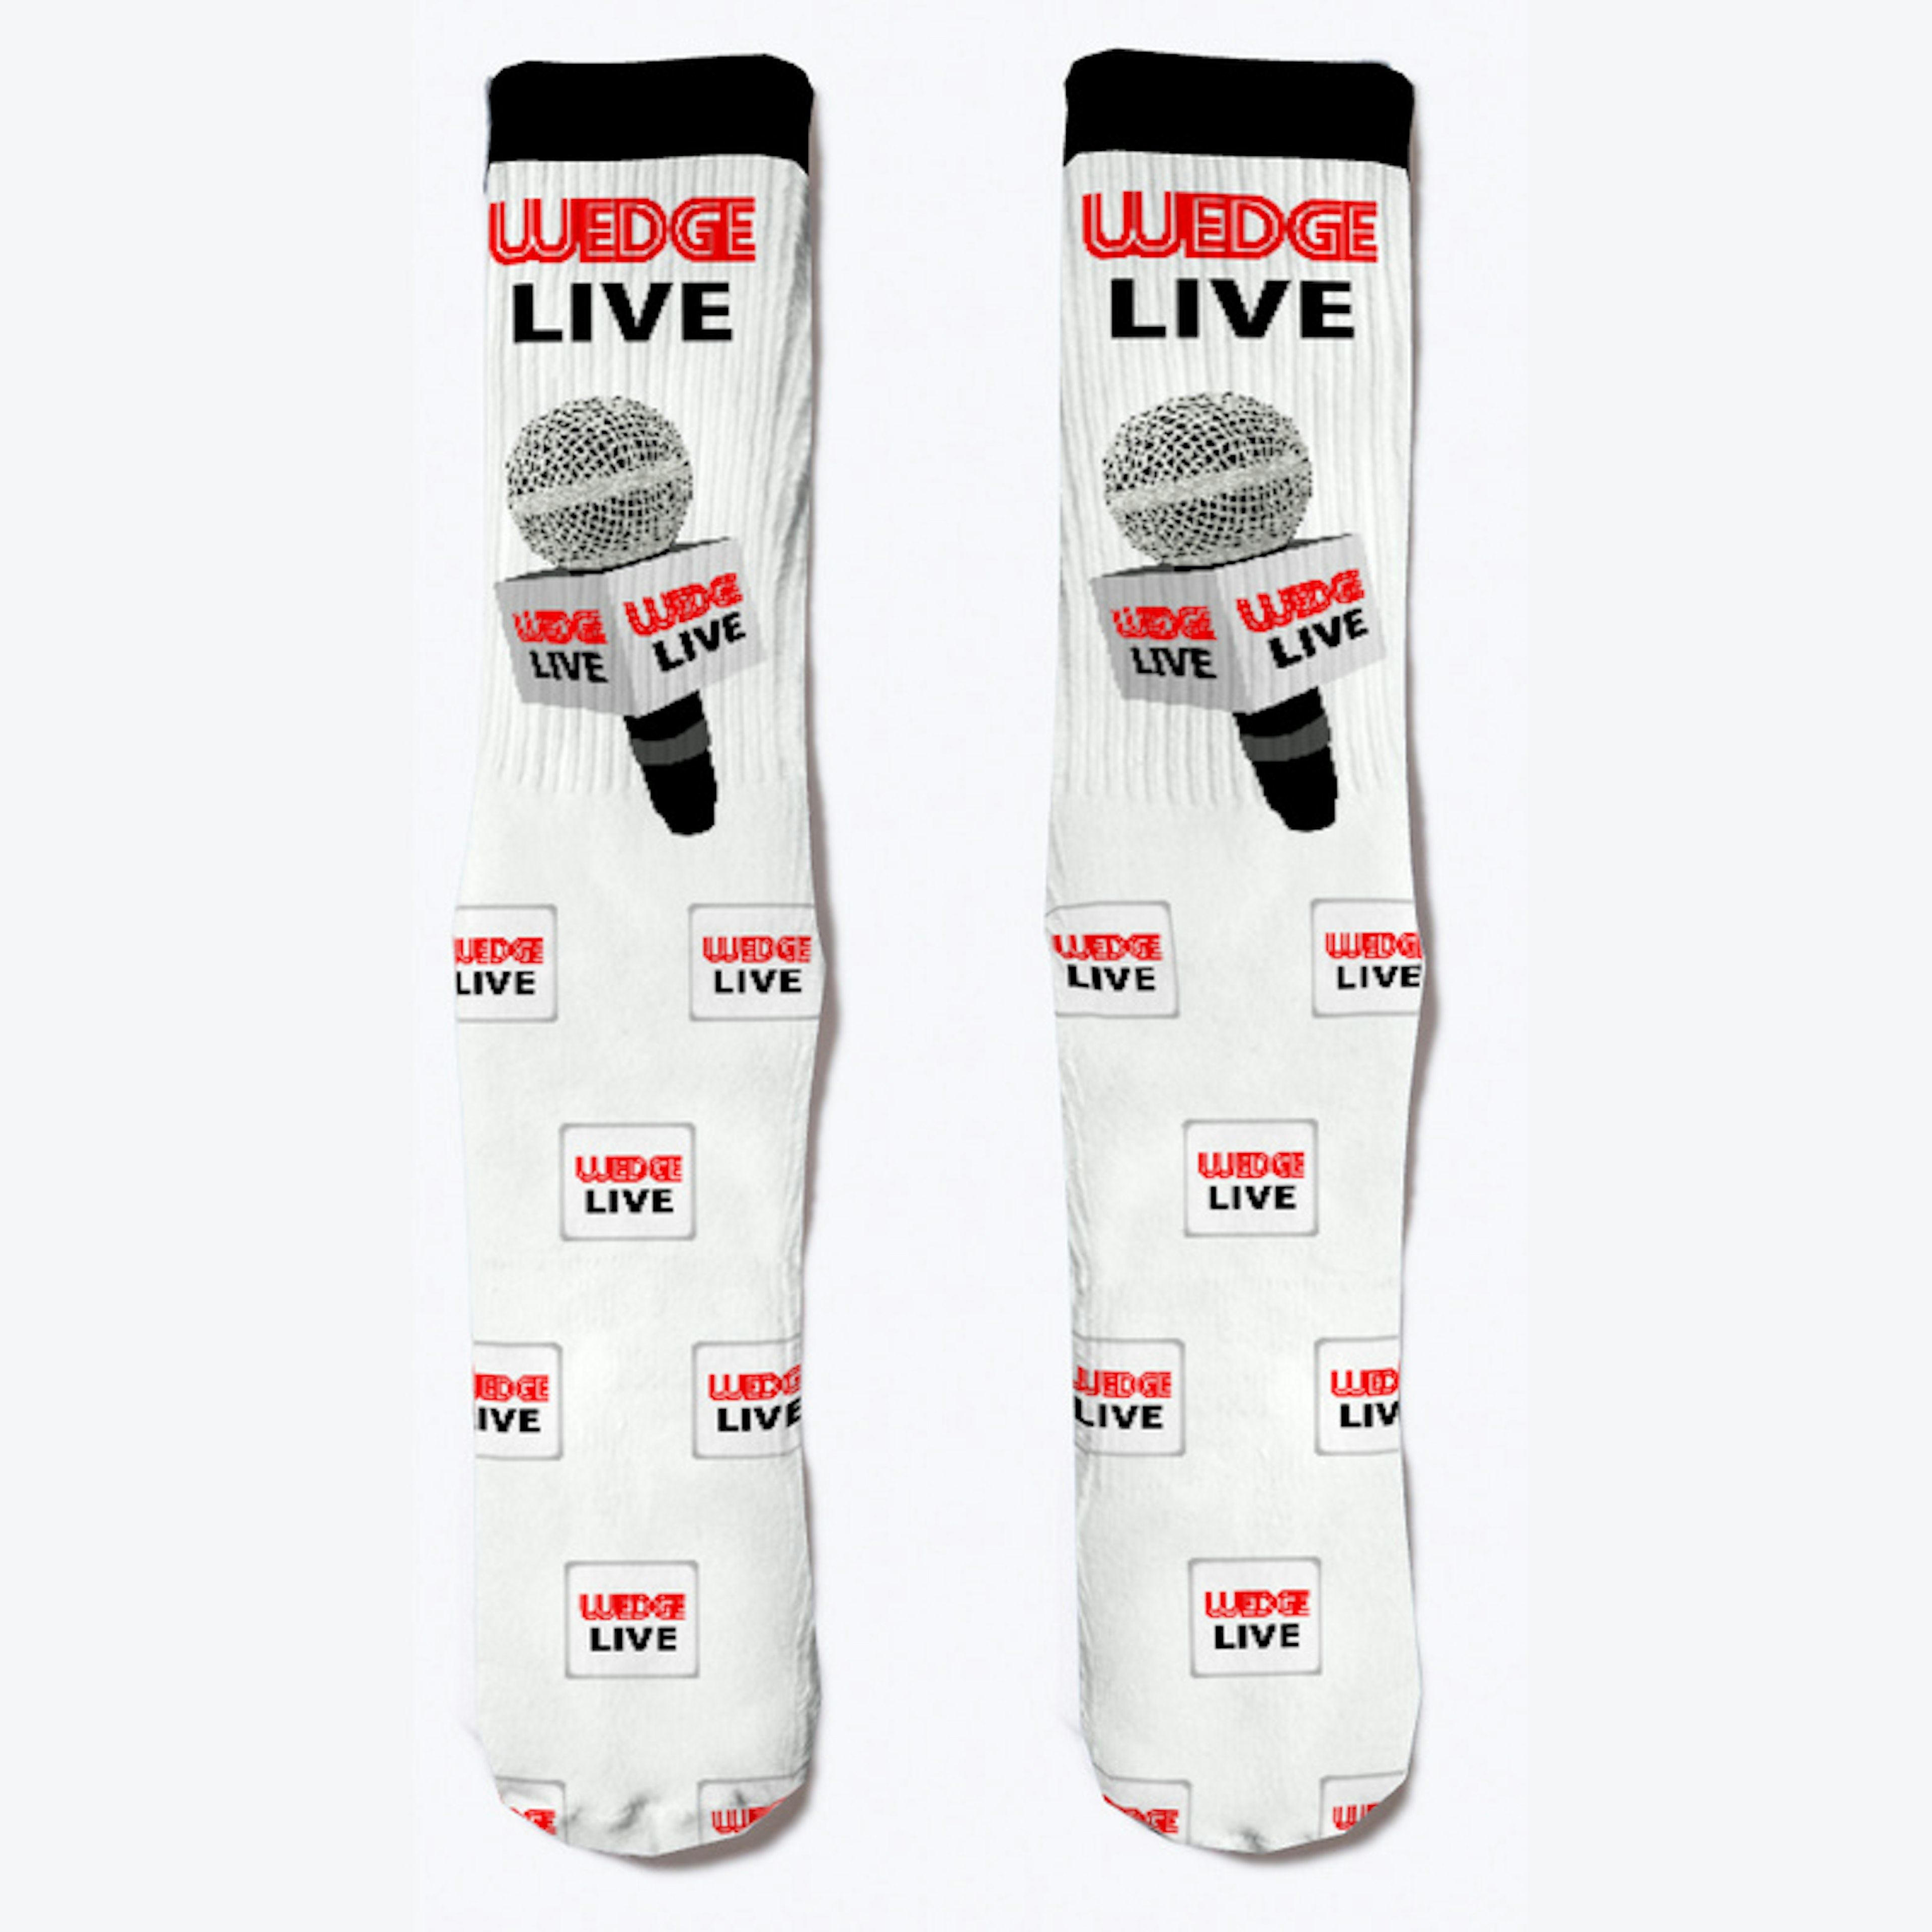 Wedge LIVE Socks